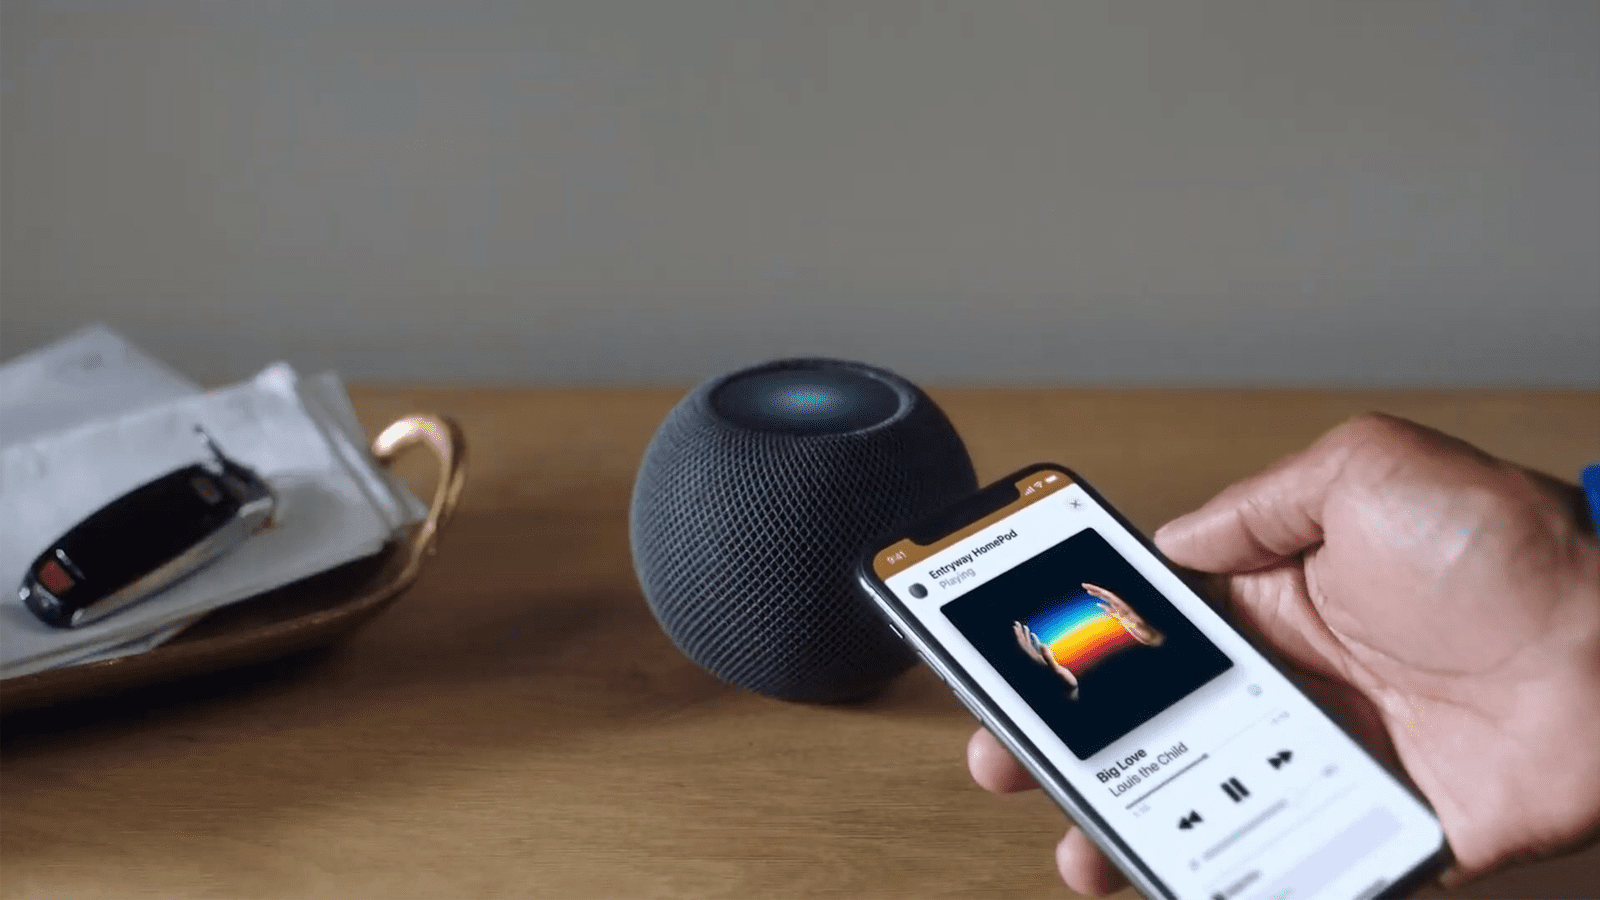 AppleƯu đãi Mini HomePod $ 99 mới của Stellar Audio và Tích hợp sâu